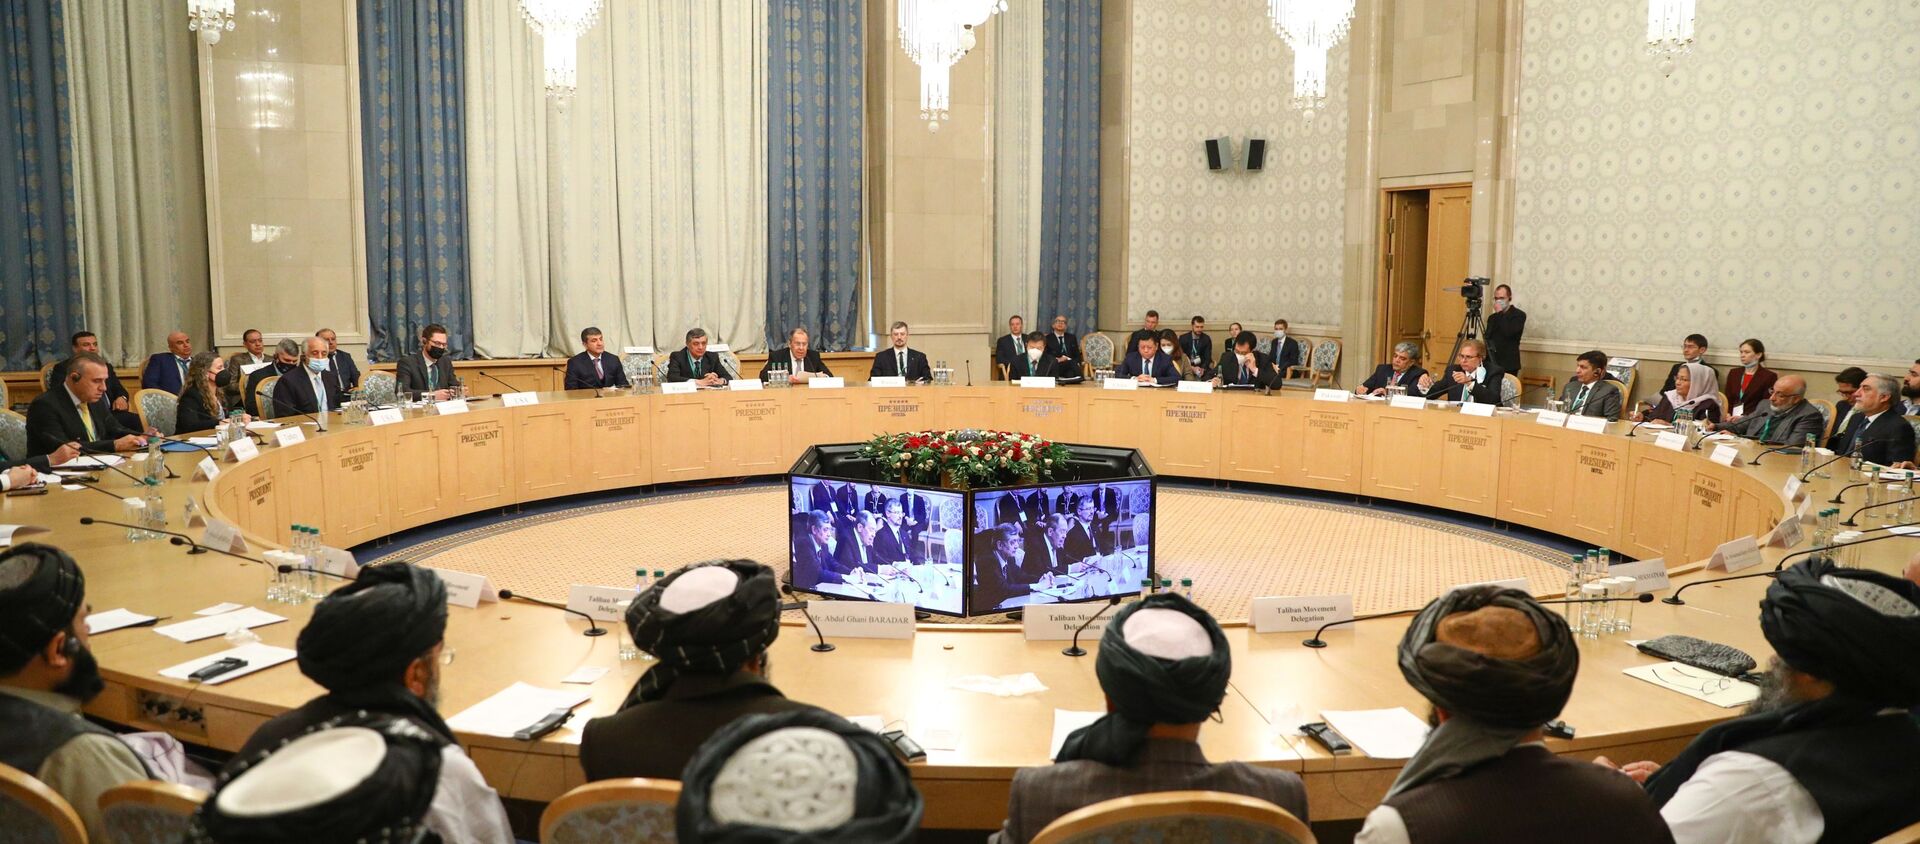 Расширенное заседание по вопросу мирного урегулирования в Афганистане - Sputnik Таджикистан, 1920, 19.03.2021